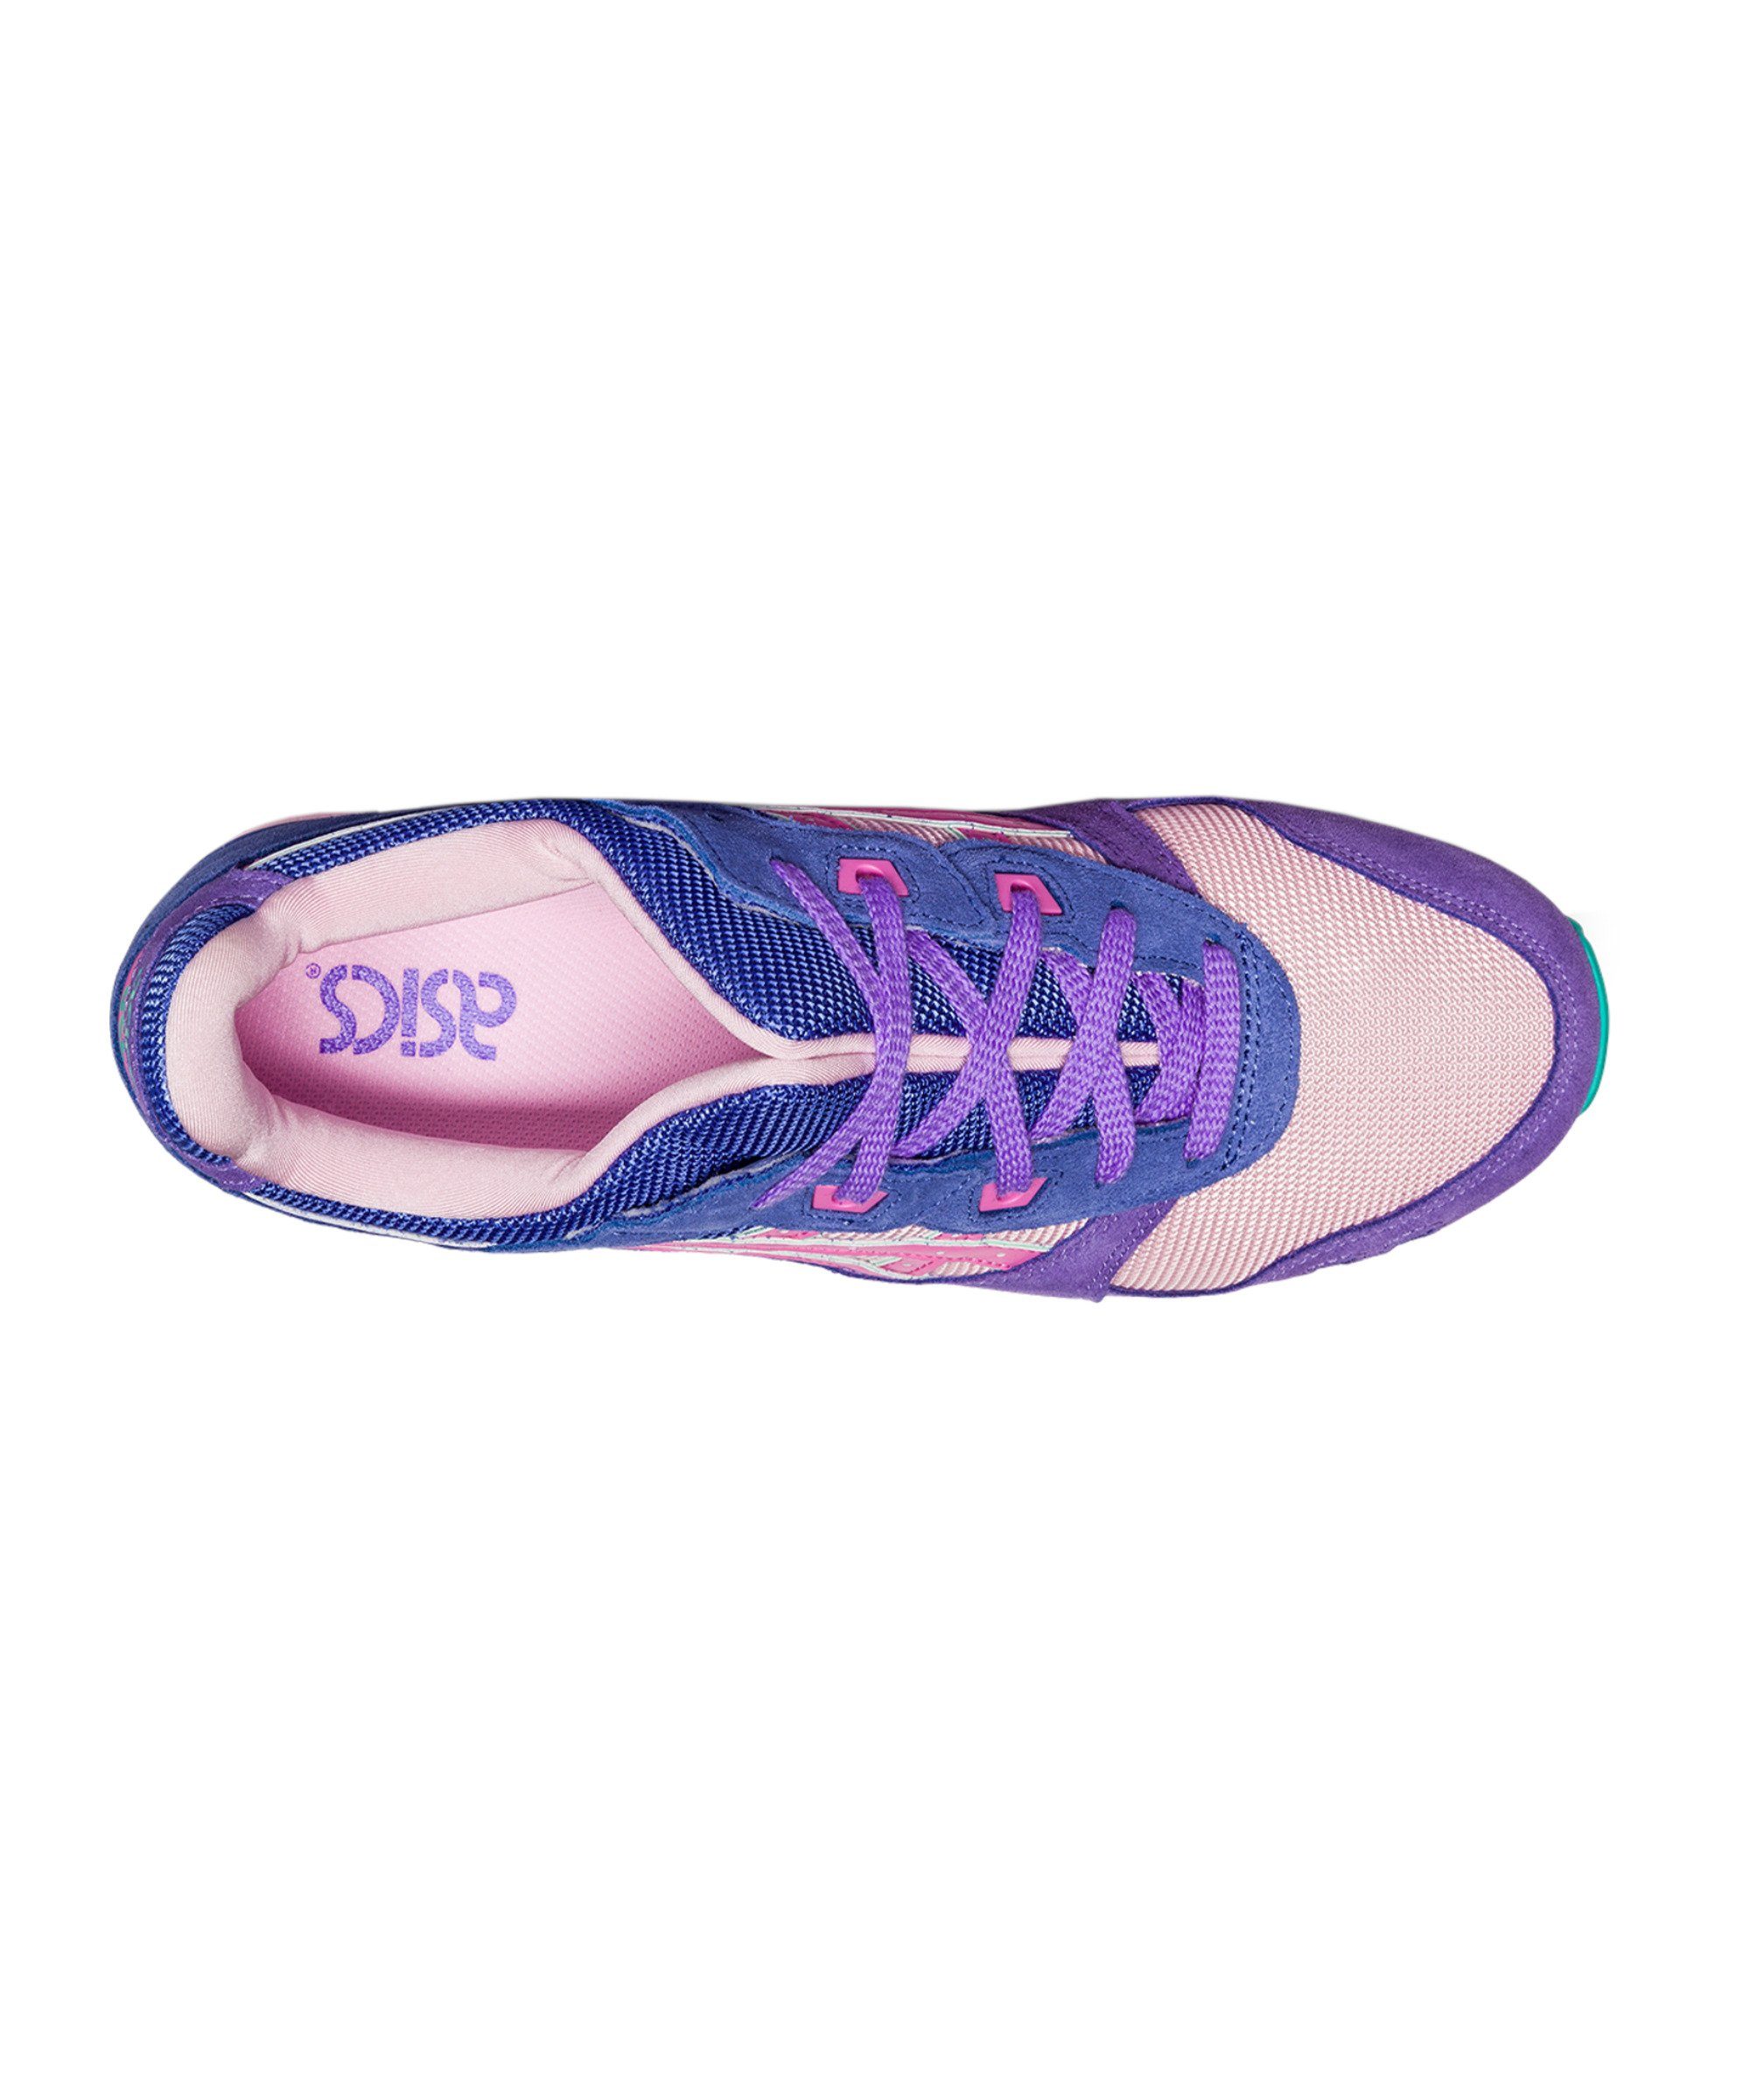 III OG Sneaker blaulilarosa Asics Gel-Lyte